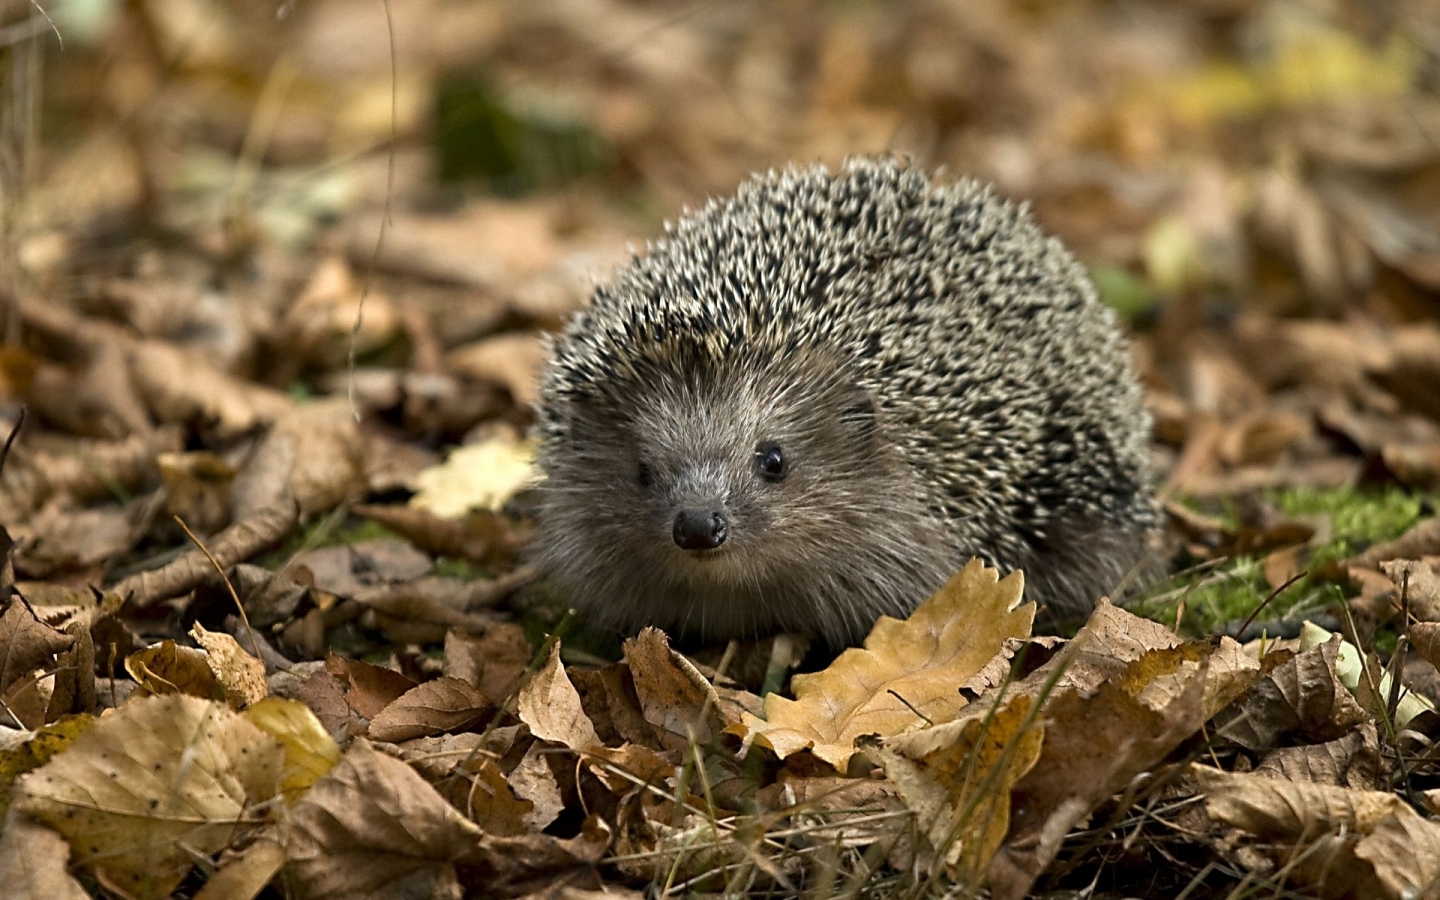 Little Hedgehog for 1440 x 900 widescreen resolution